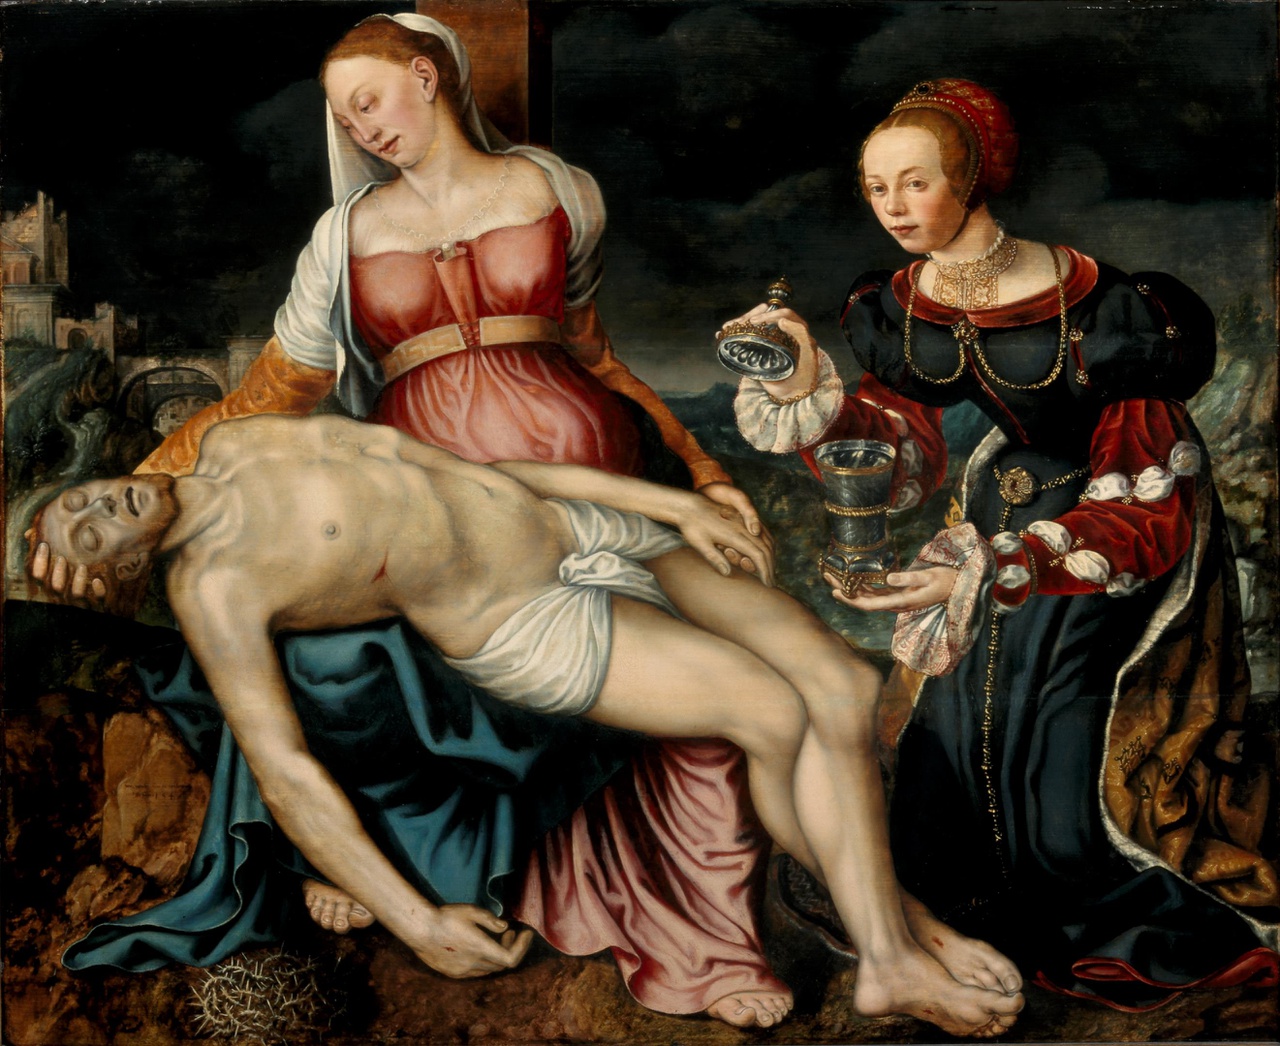 8/8 - Mechtelt van Lichtenberg toe Boecop was een van de weinige vrouwelijke schilders uit de zestiende eeuw. Mogelijk was ze in de leer bij Jan van Scorel. Piëta met Maria Magdalena, 1546. (inv. nr. 18073).